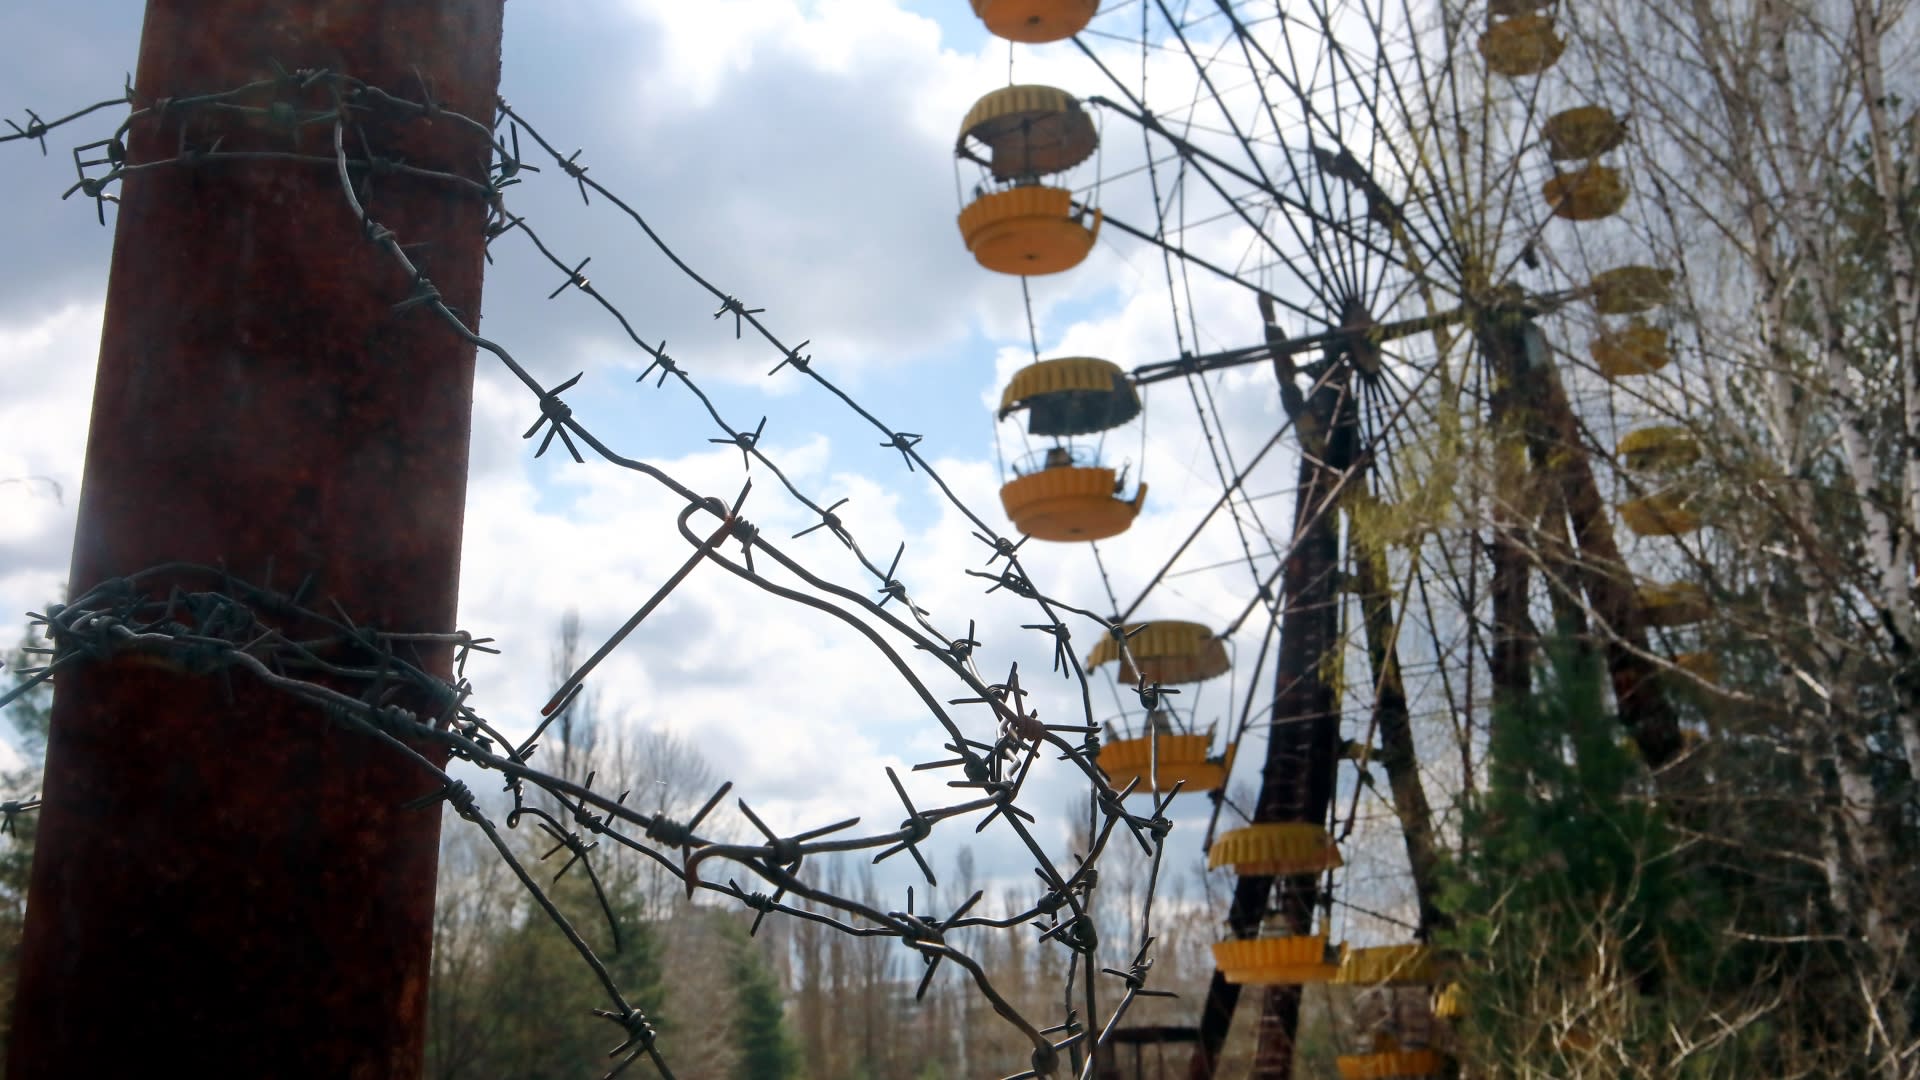 V Černobylu už fotila spousta lidí, většinou ale snímky nebudí moc velký rozruch